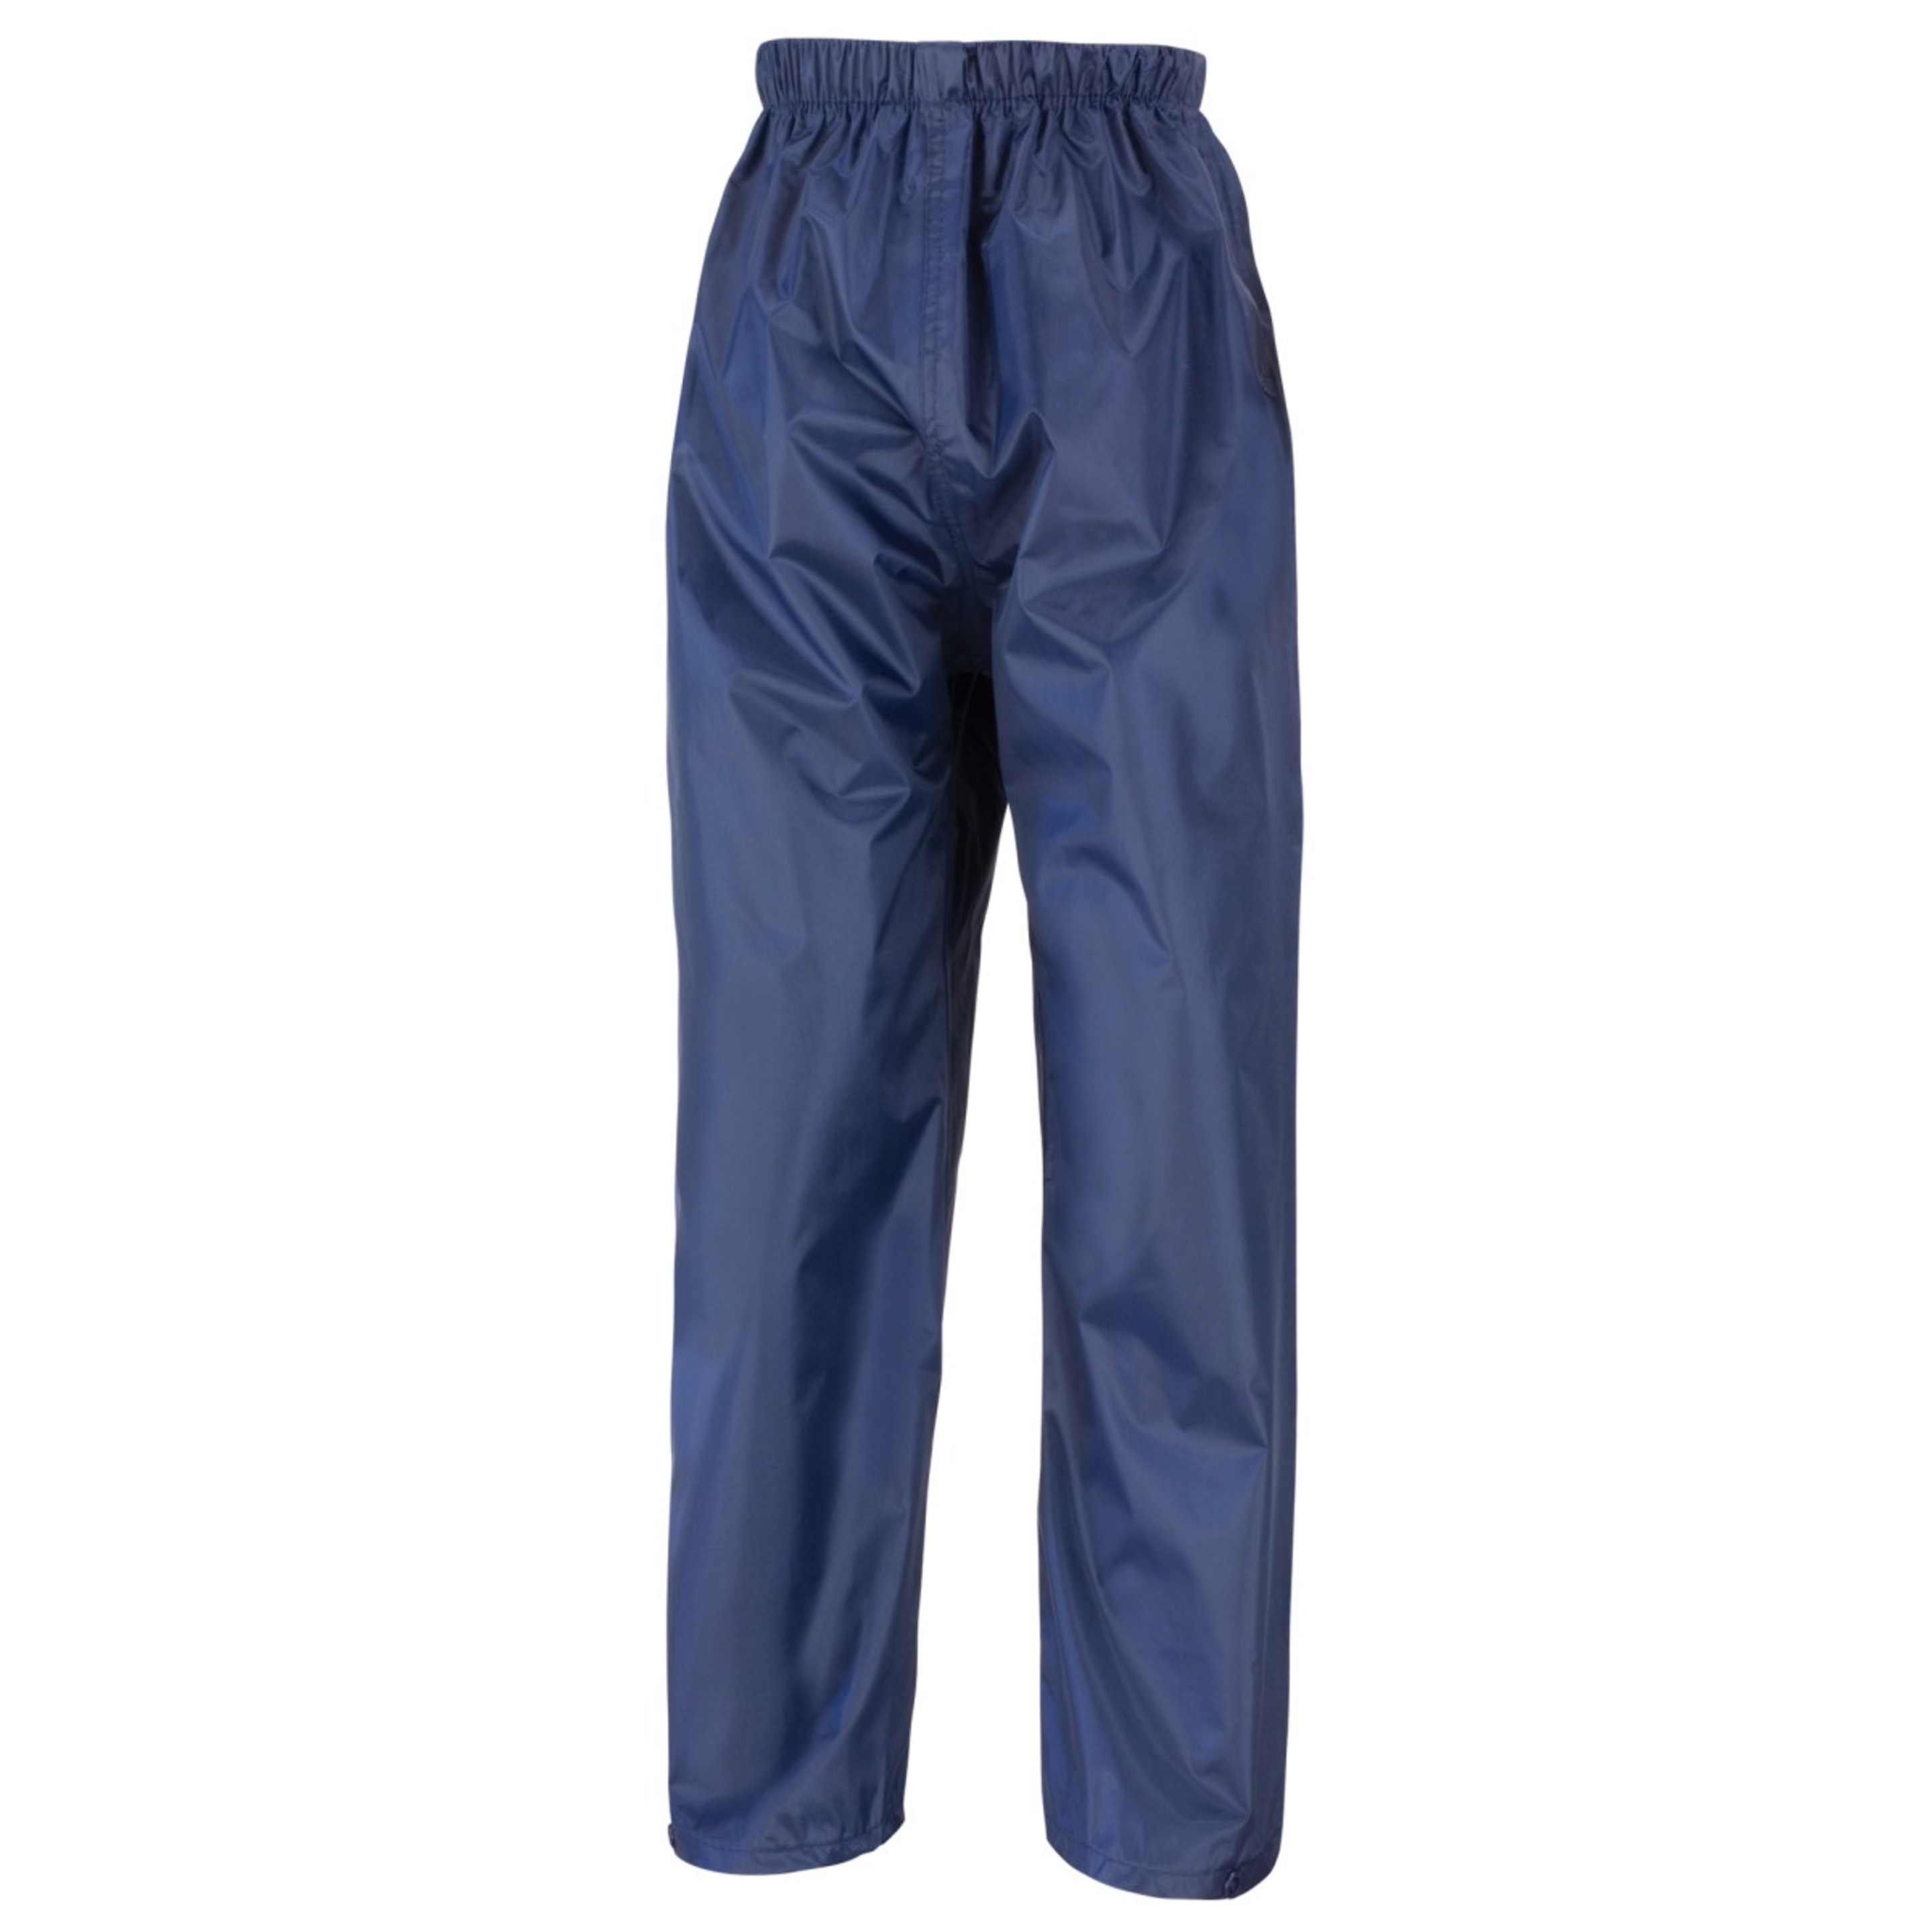 Core  Pantalones Impermeable Modelo Stormdri Unisex Niños Niñas Result (Azul)